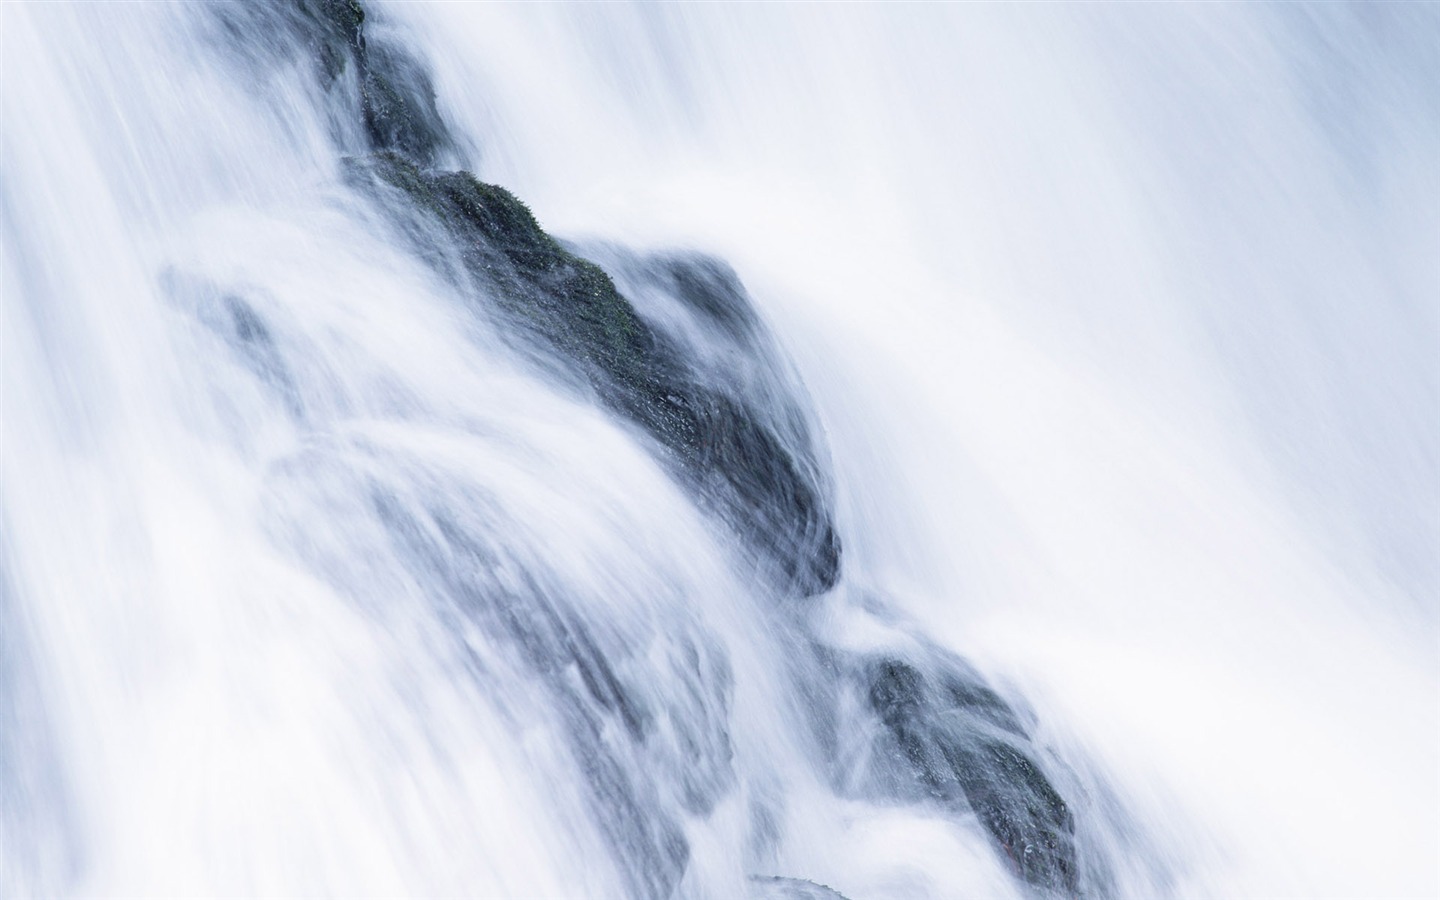 Waterfall flux HD Wallpapers #32 - 1440x900